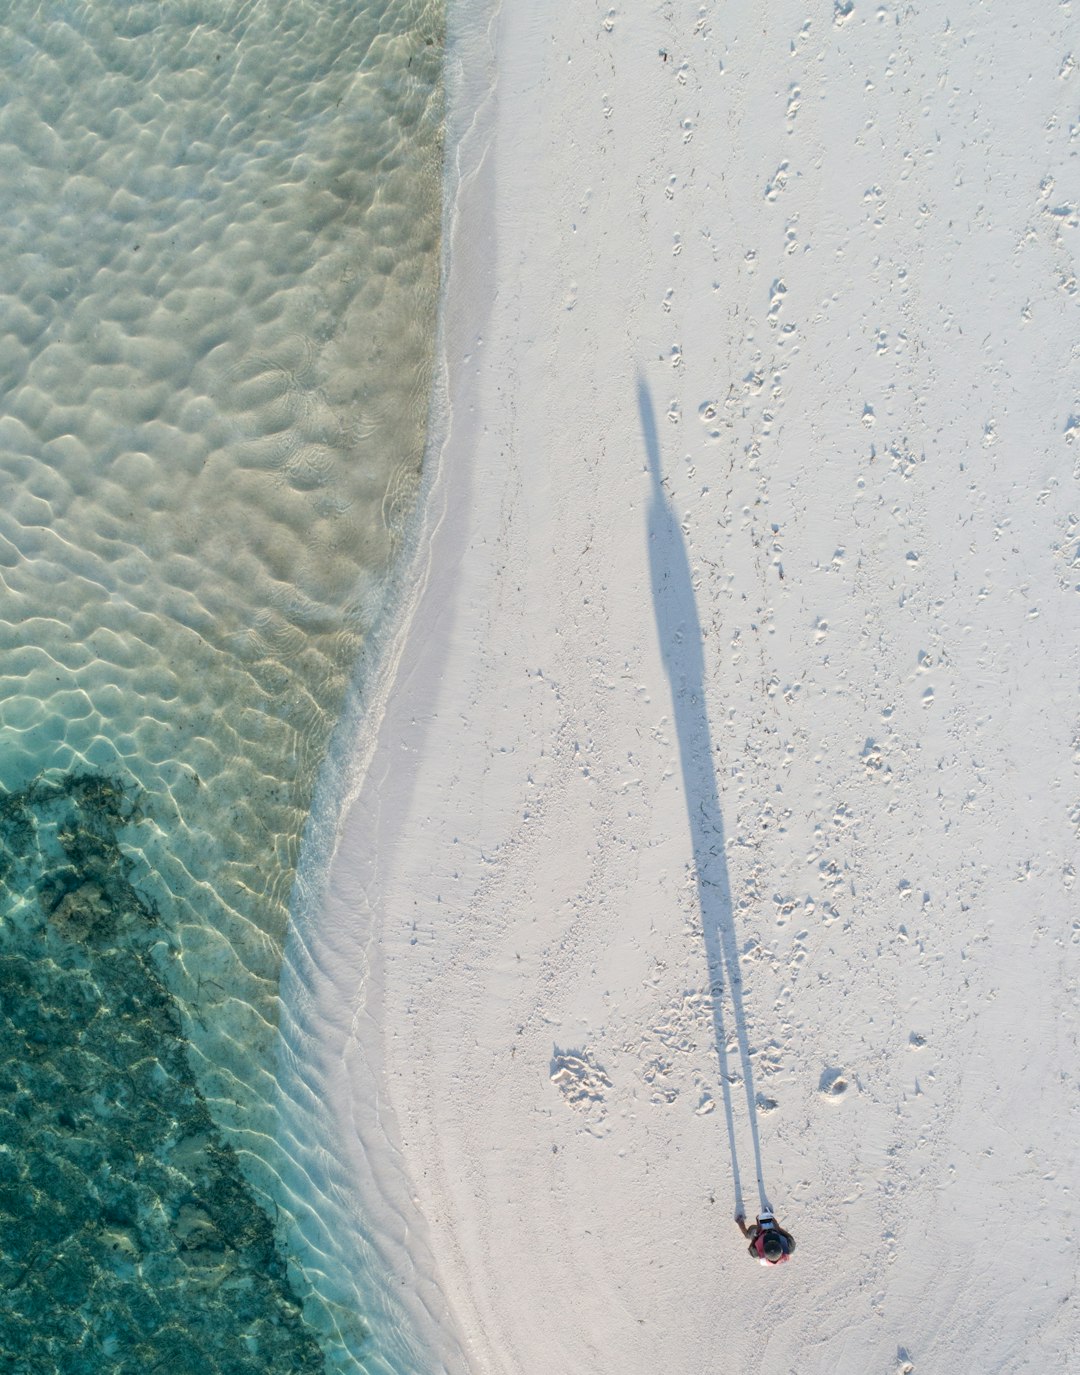 Lake photo spot Fenfushi Vaavu